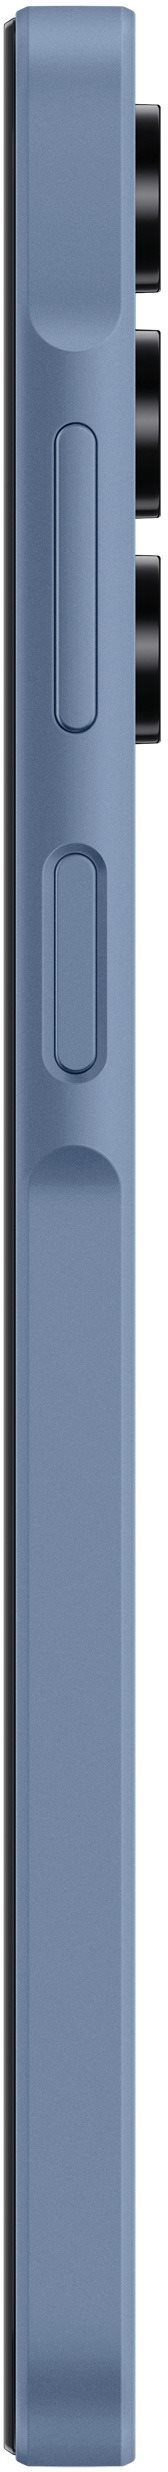 Mobil Samsung Galaxy A15 LTE 4 GB / 128 GB modrá 